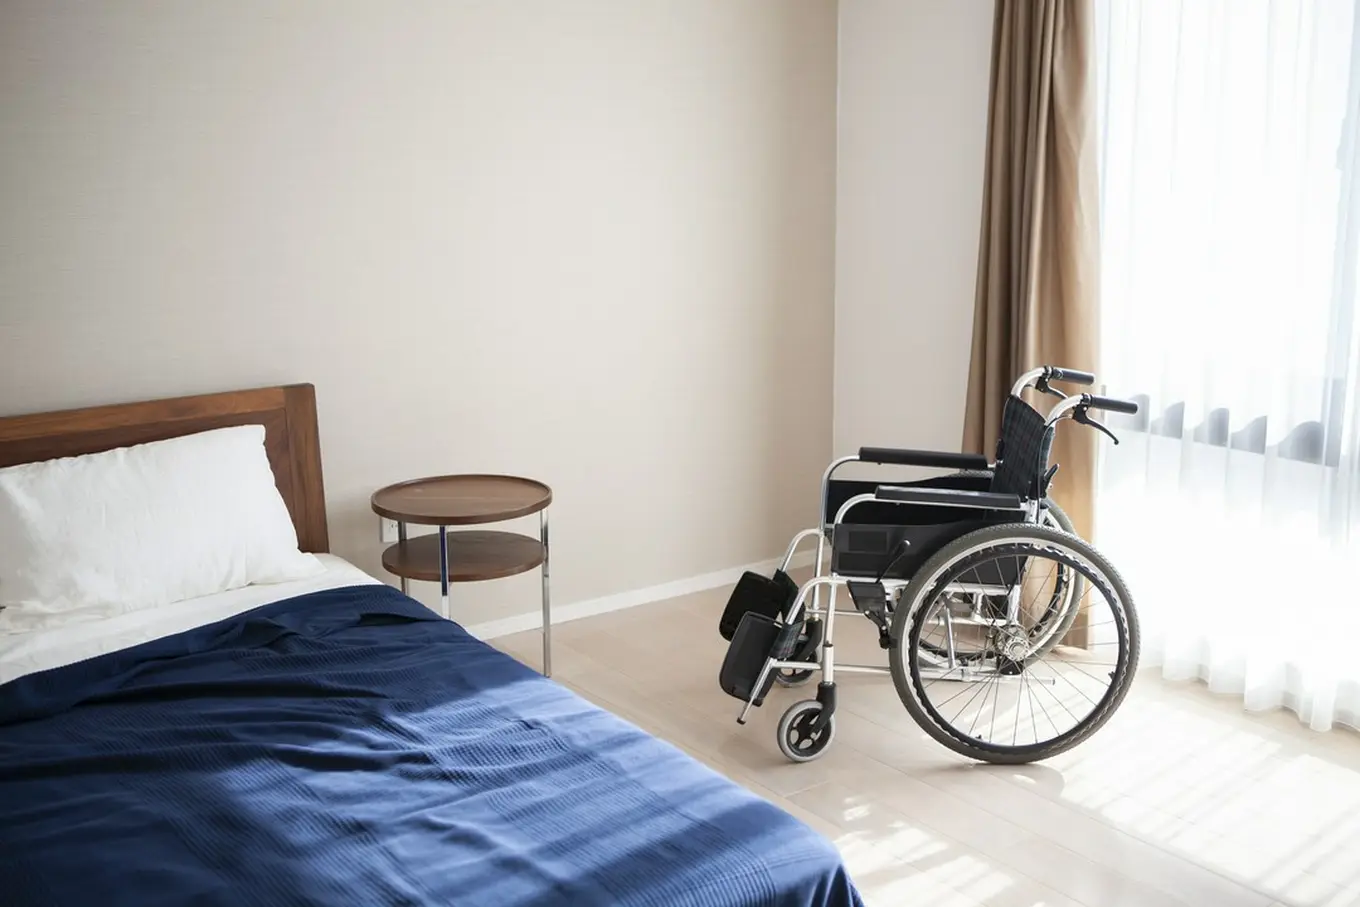 pusty wózek inwalidzki w pokoju hotelowym